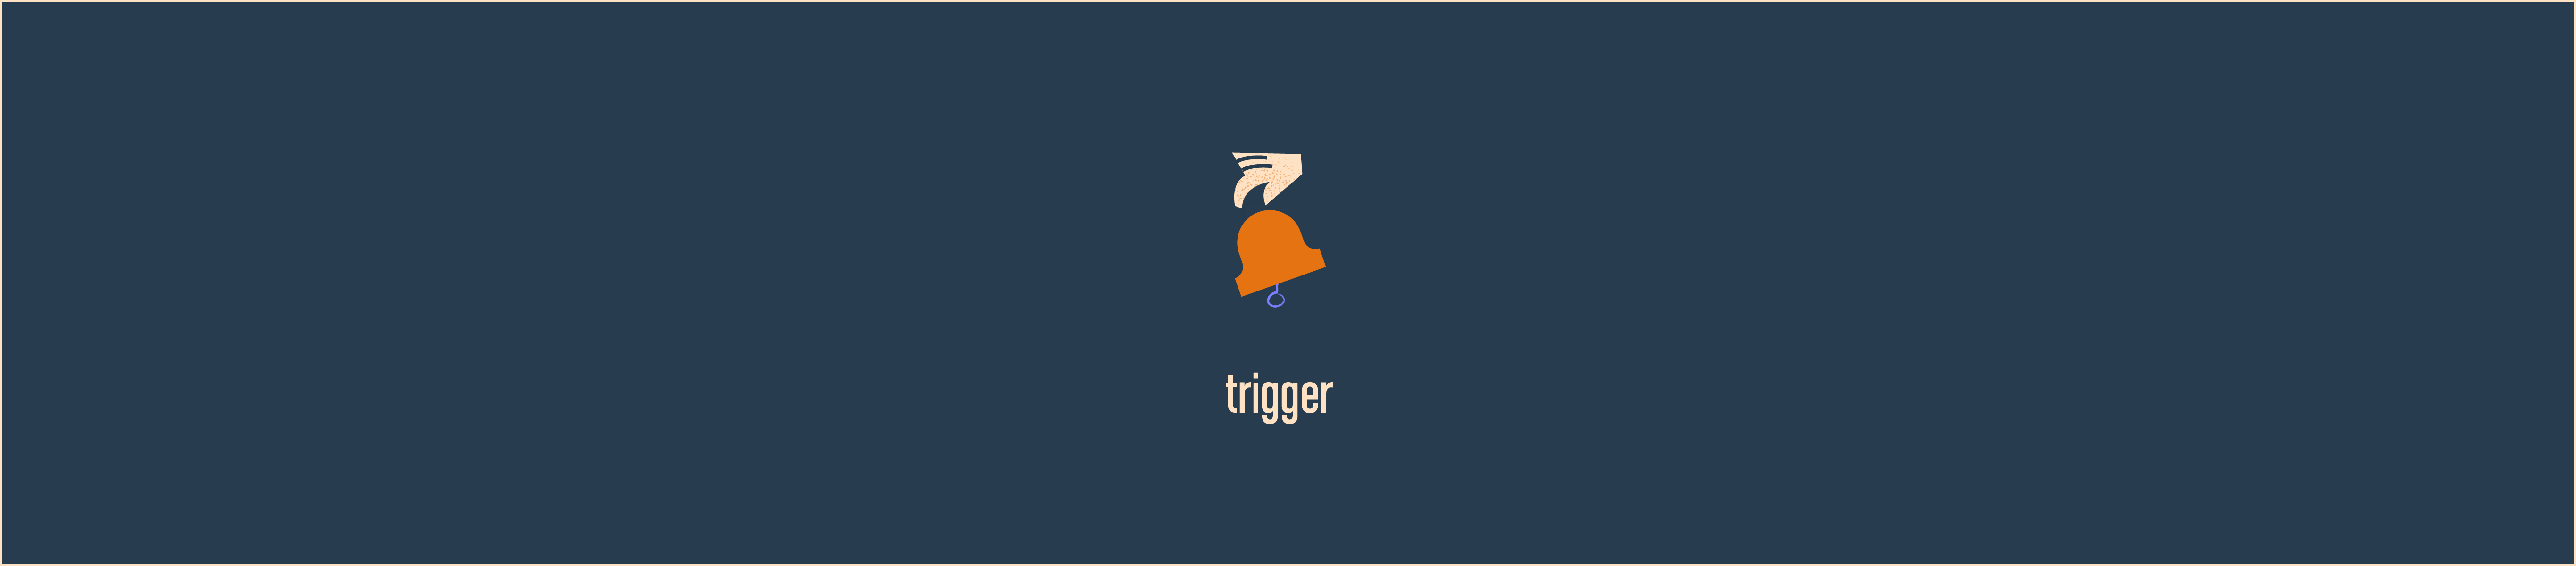 Trigger User Engagement